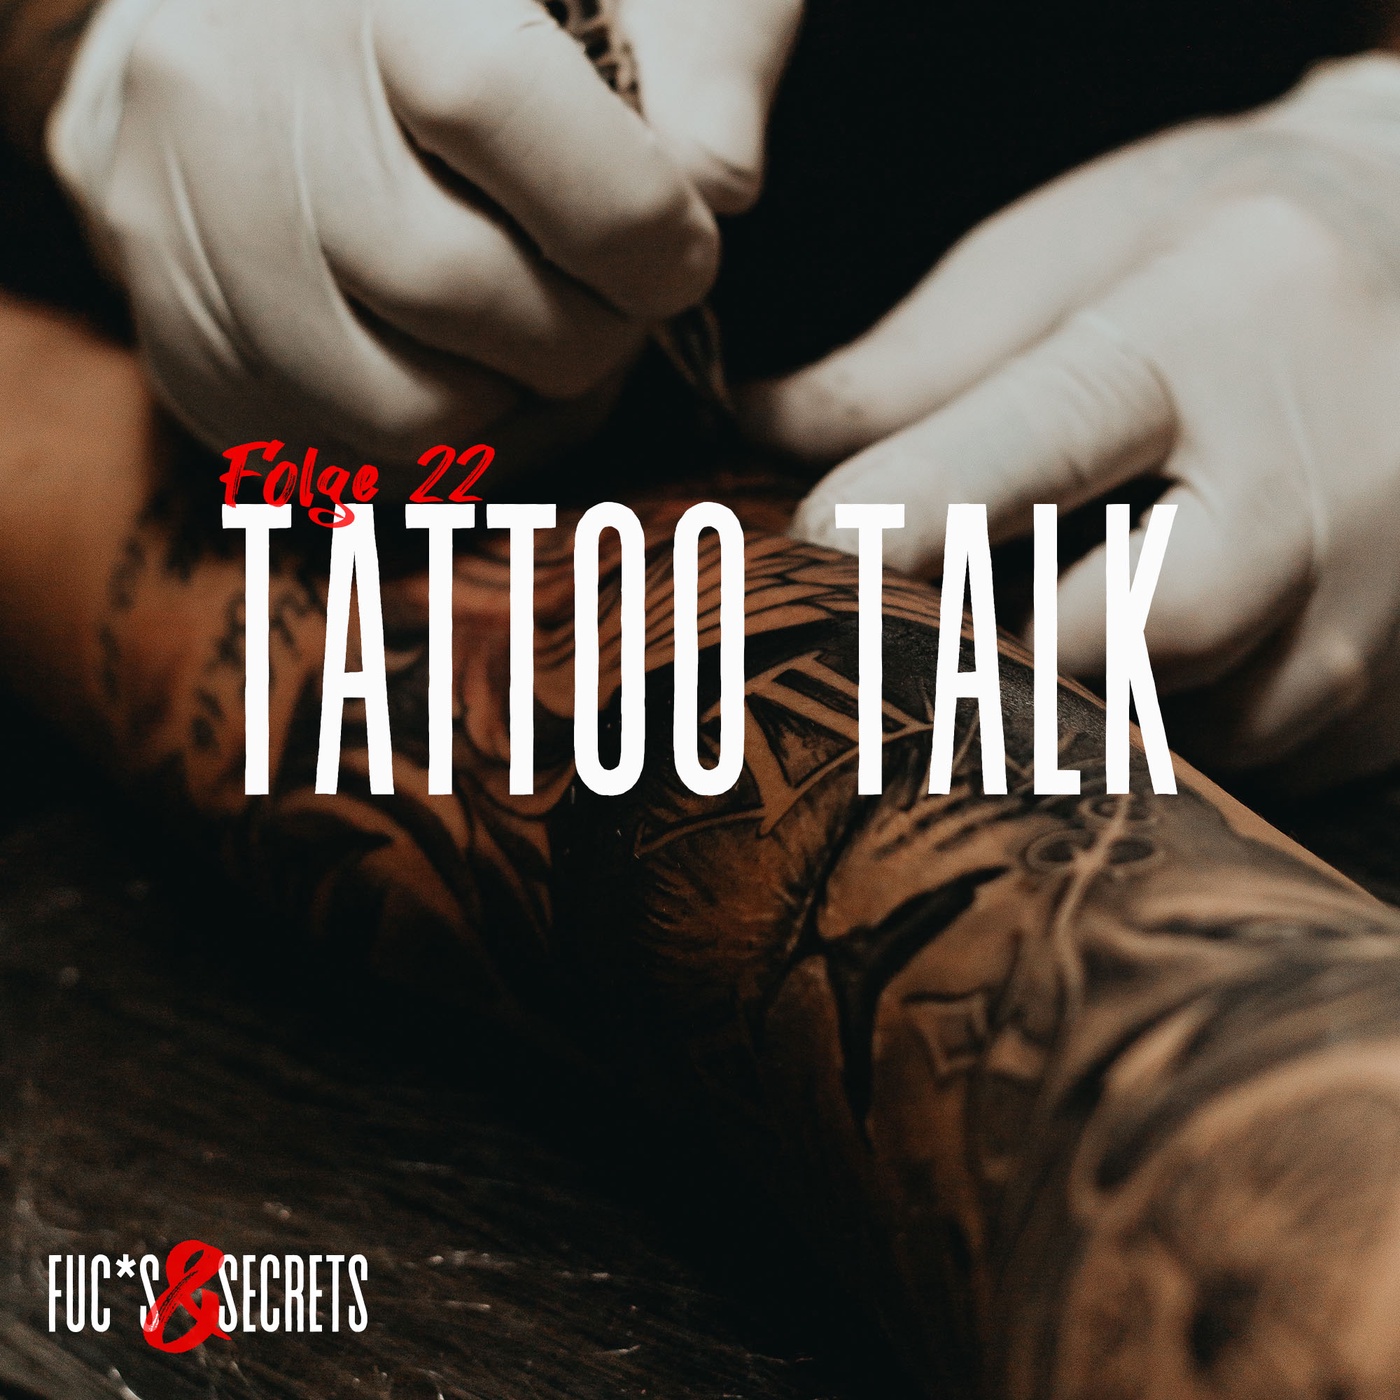 Tattoo Talk